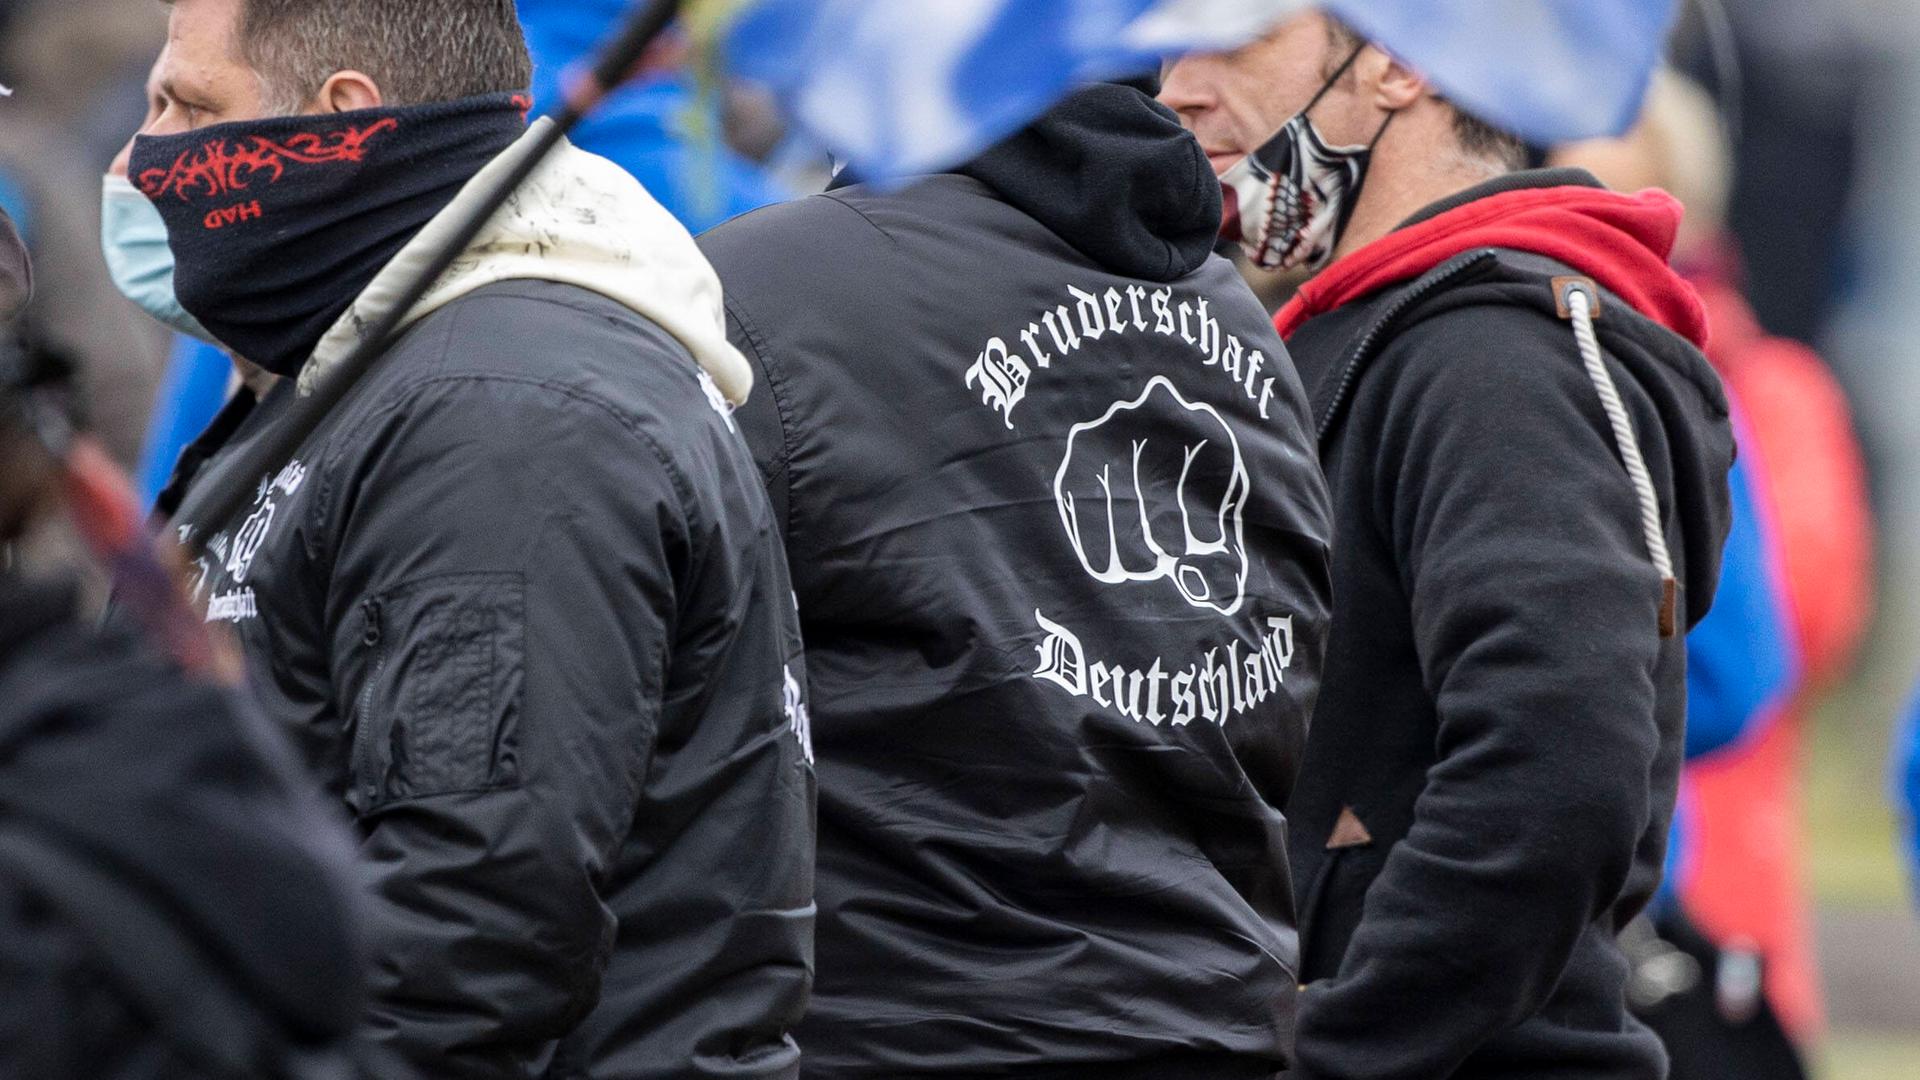 Rechtsextreme bei einer Querdenken-Demo. Einer trägt eine Jacke mit der Aufschrift Bruderschaft Deutschland.